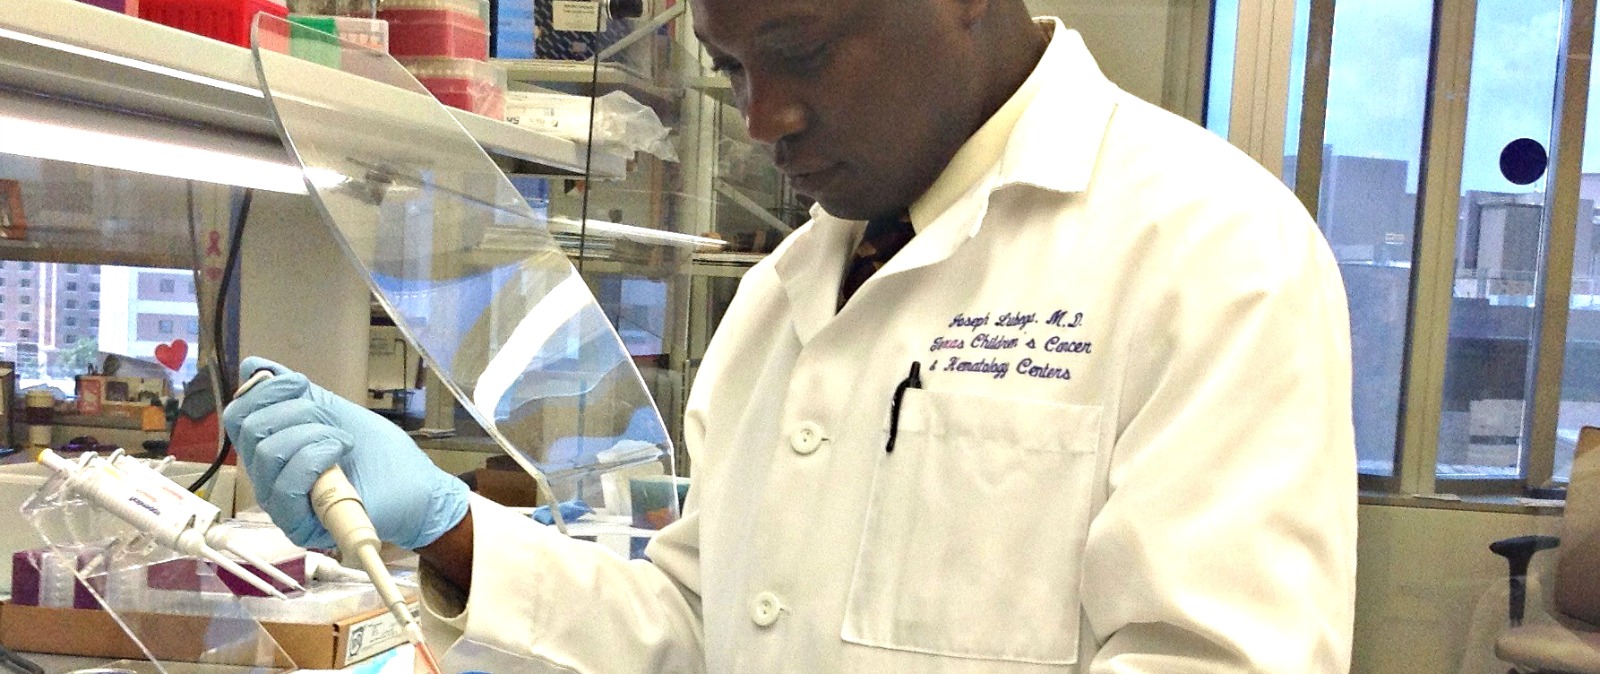 Dr-Joseph-Lubega-in-lab